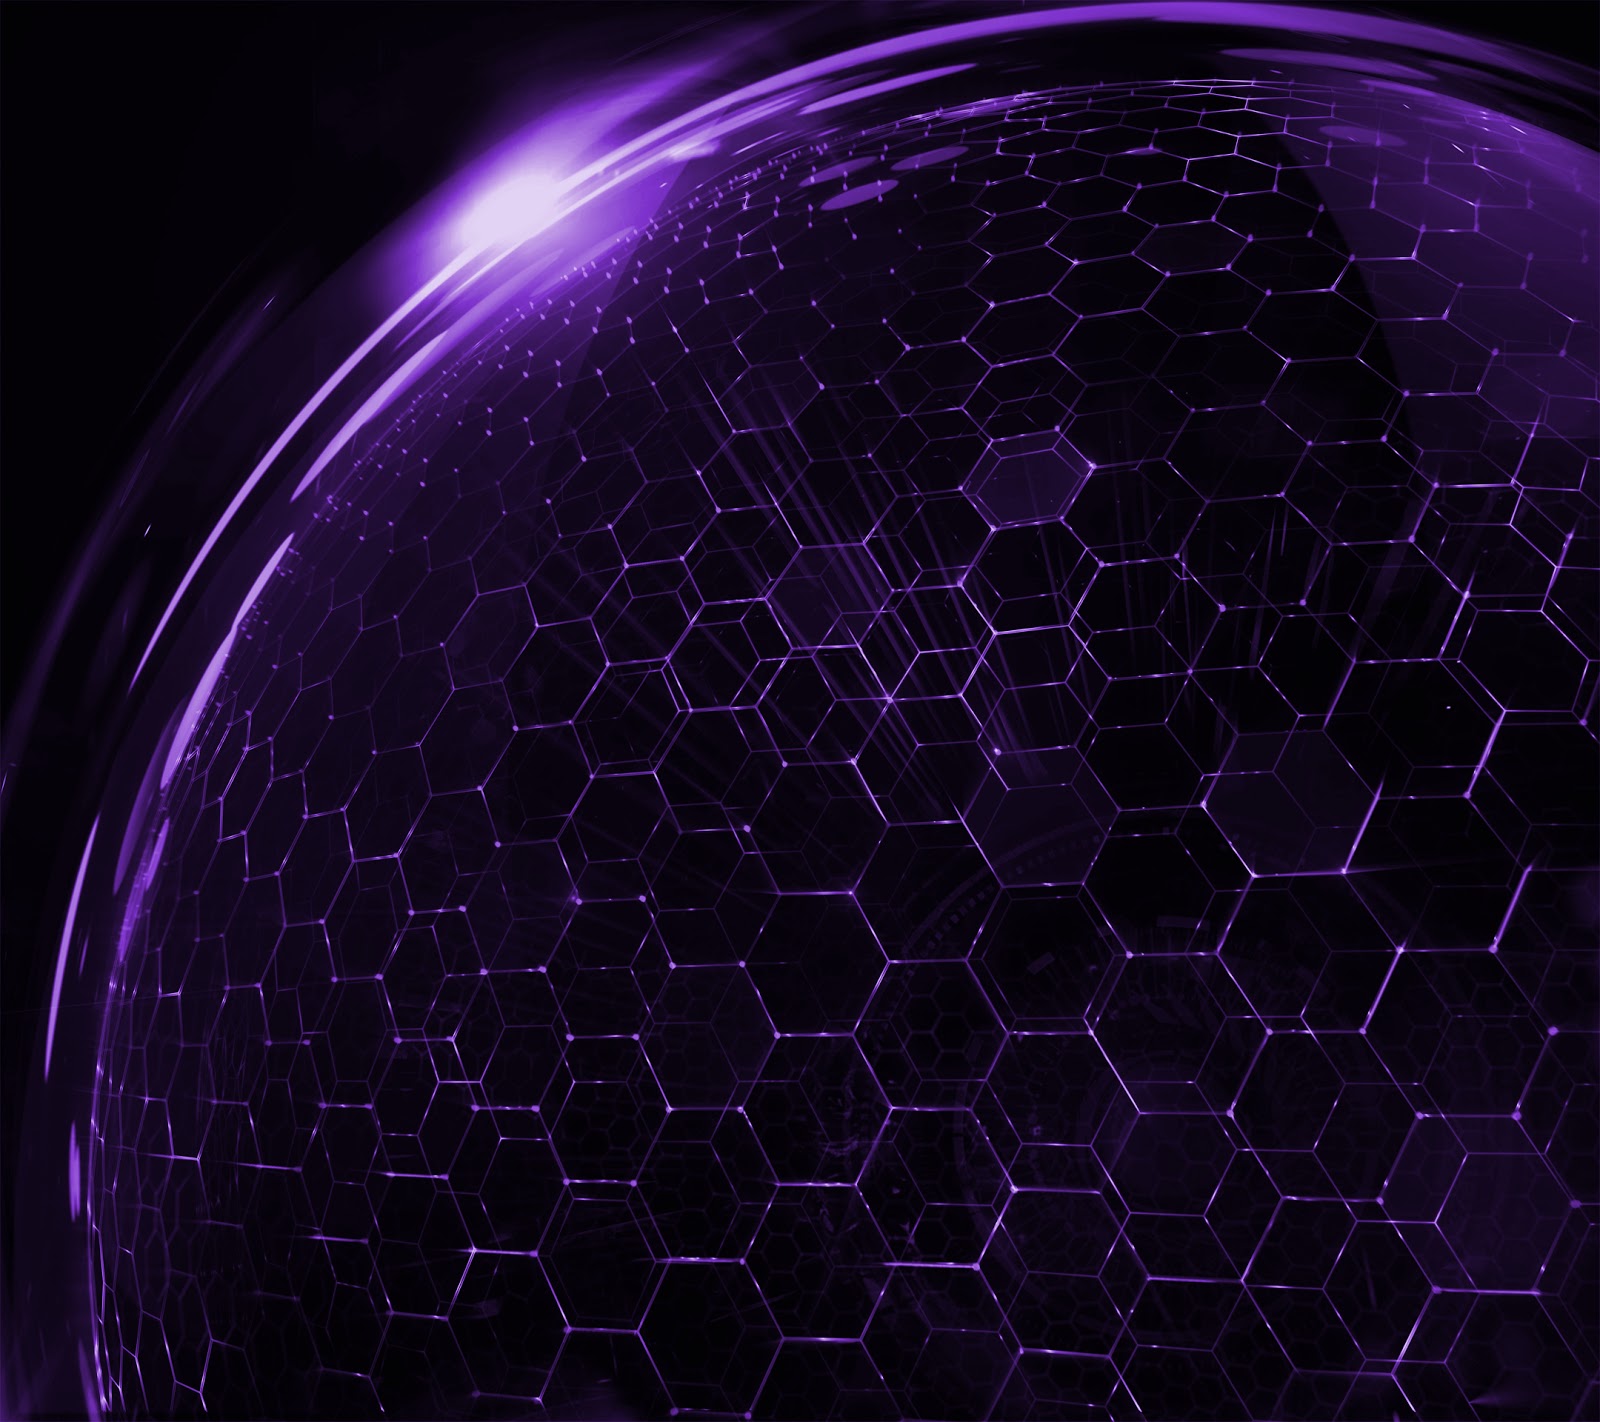 http://4.bp.blogspot.com/-VO_PXxFDQH4/ULNSXg_fqiI/AAAAAAAAHPA/1D-kbfDULUY/s1600/HTC+Droid+DNA+Purple+Wallpaper.jpg